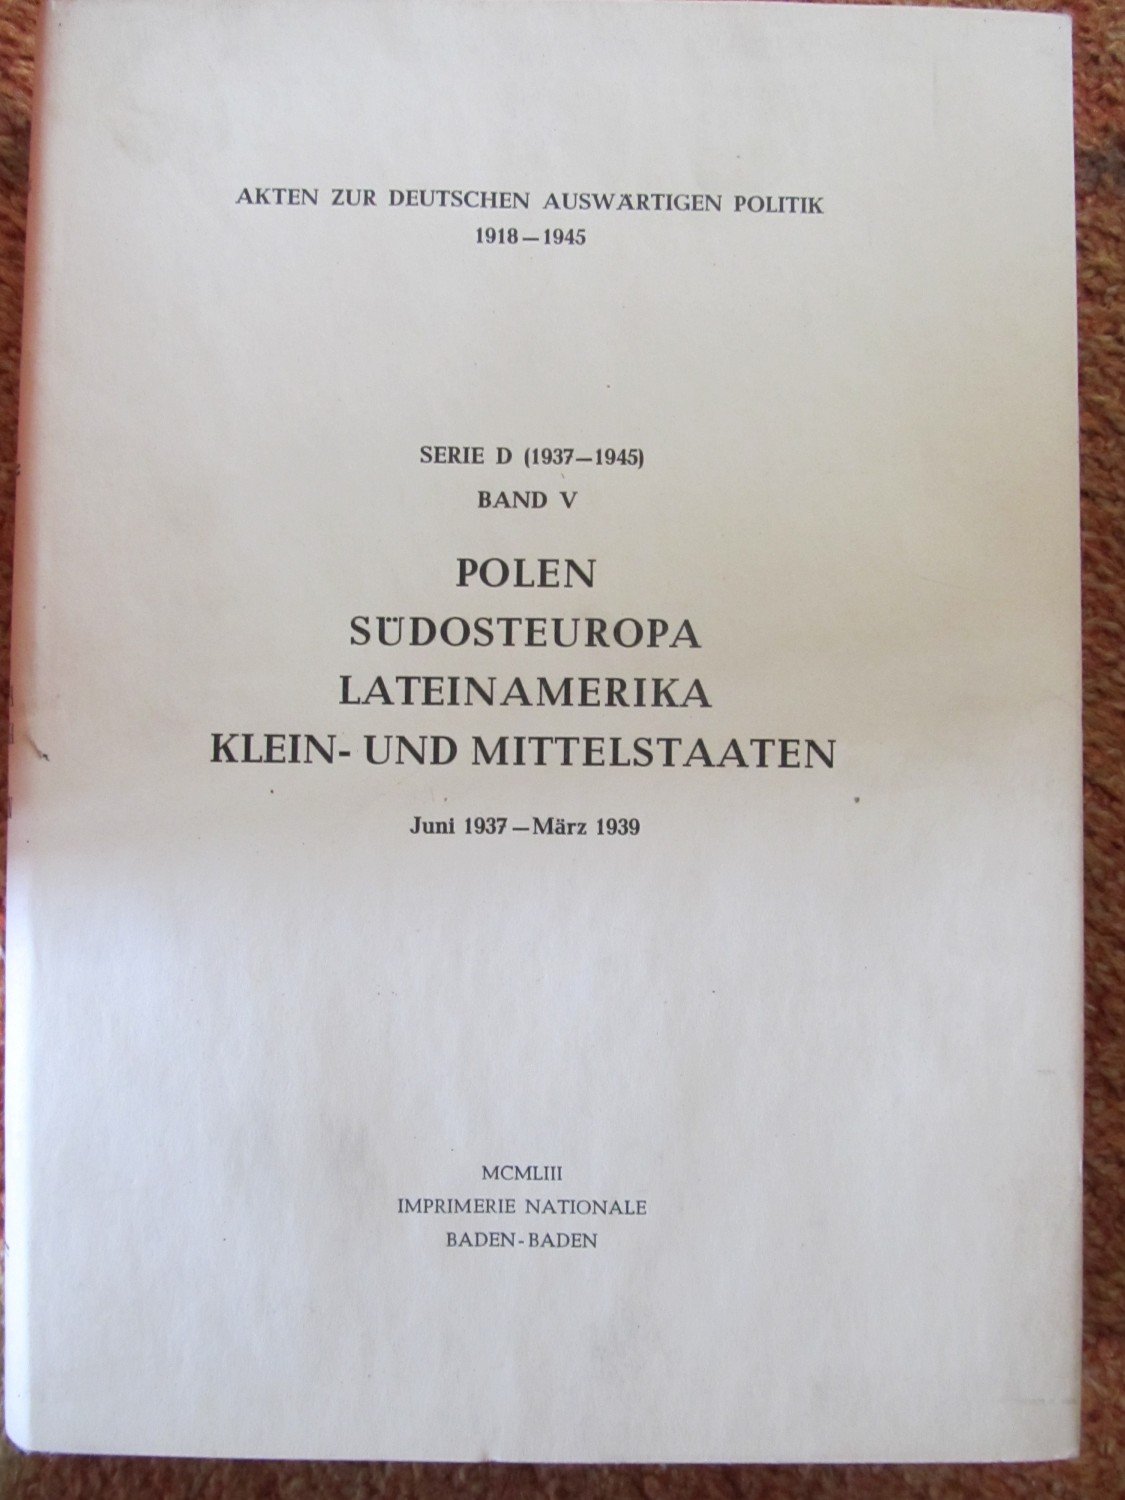 Akten zur deutschen auswärtigen Politik 1918-1945.“ – Buch 